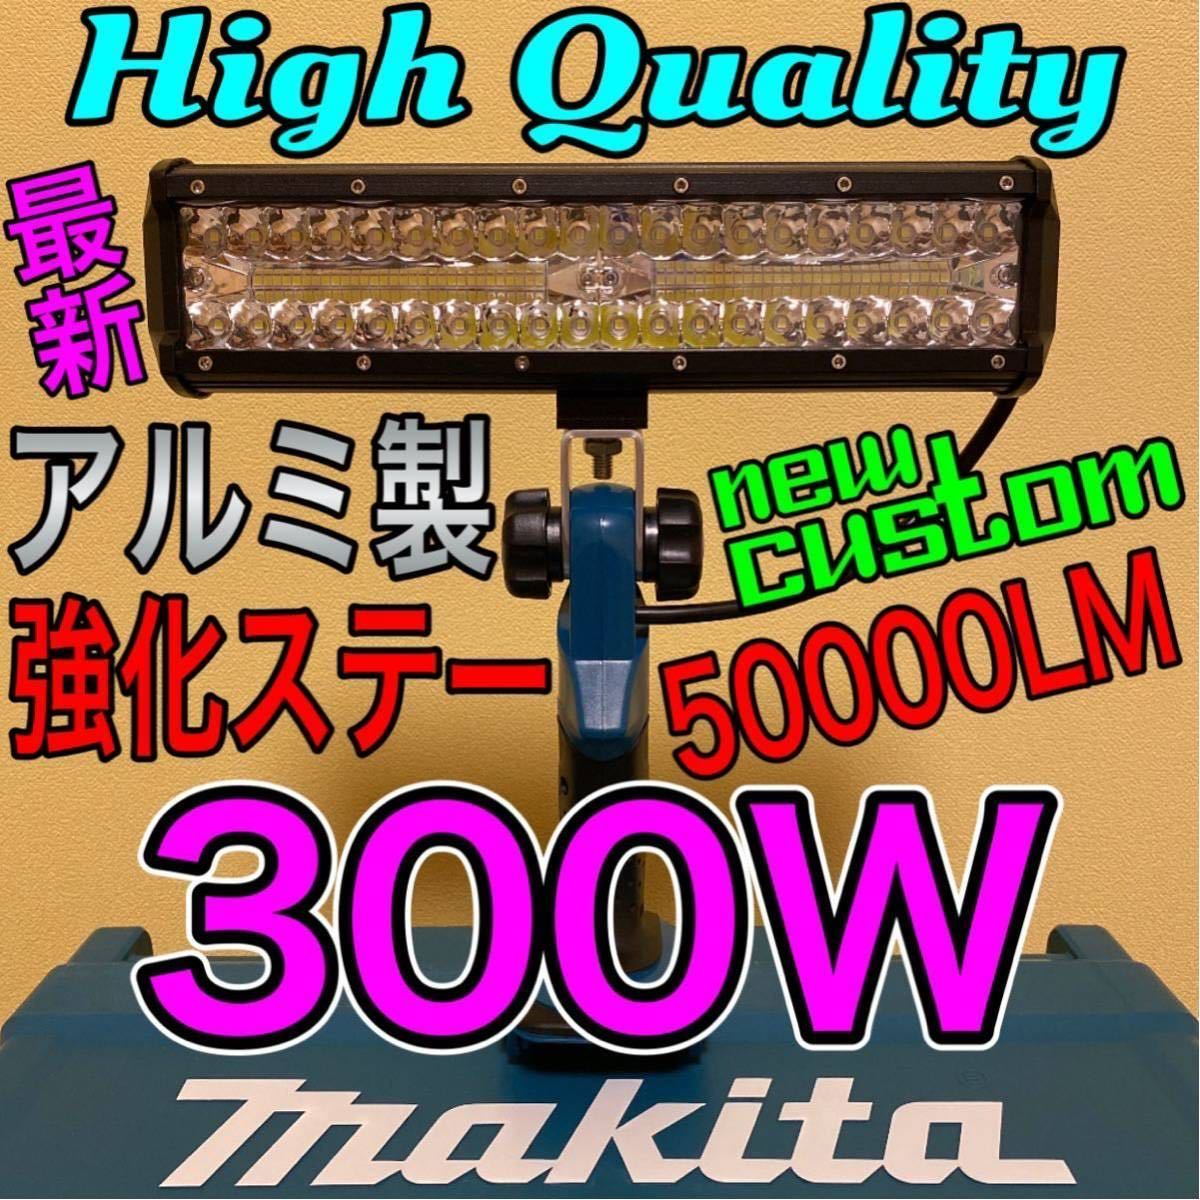 マキタ makita 300W LED ワークライト フラッシュ 作業灯 投光器 